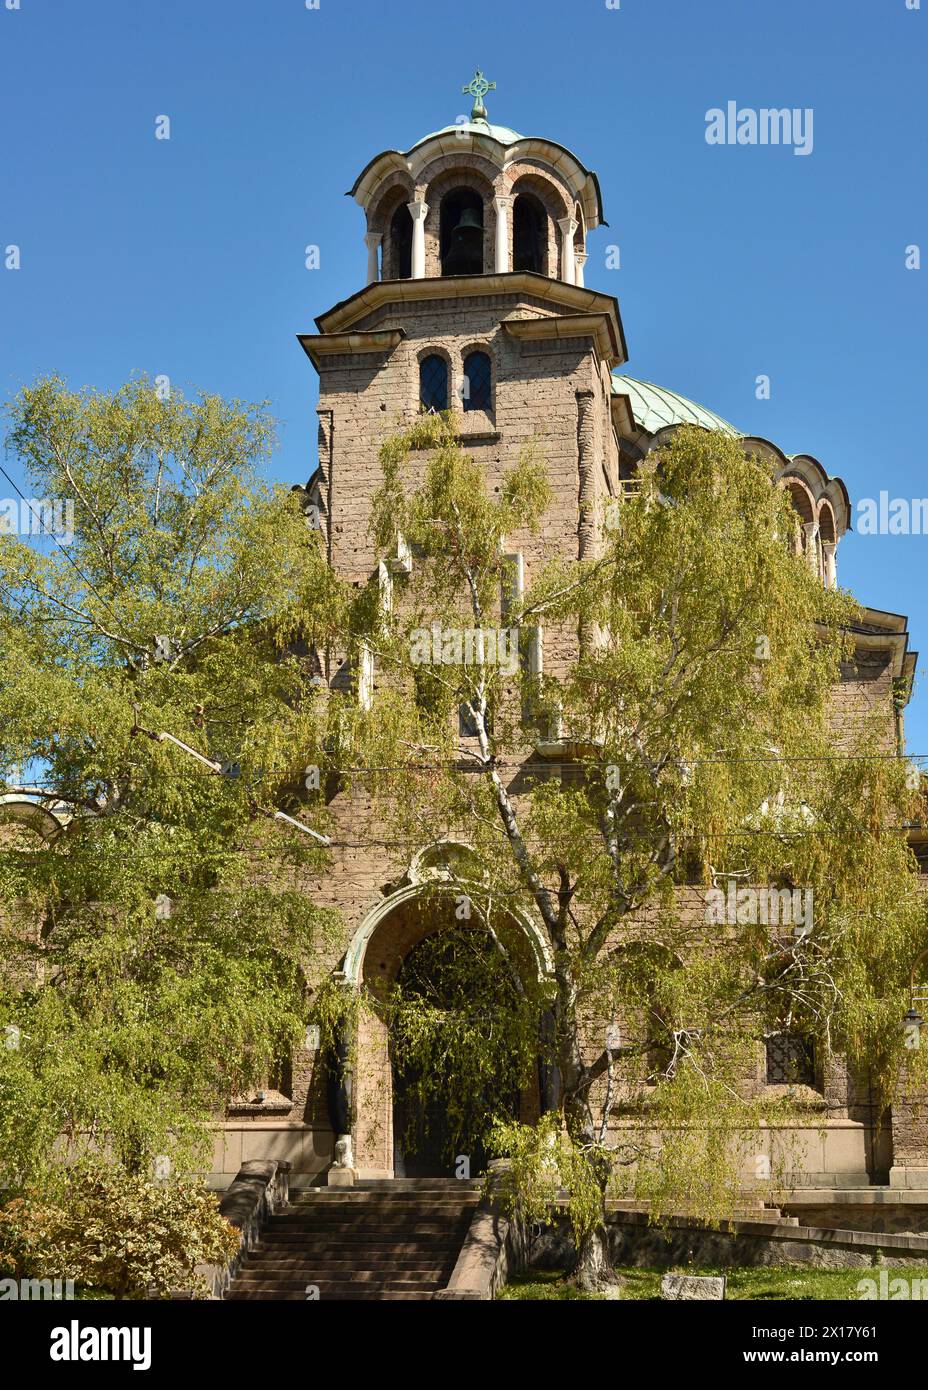 St. Nedelya Orthodox Church in Sofia Bulgaria, Eastern Europe, Balkans, EU Stock Photo